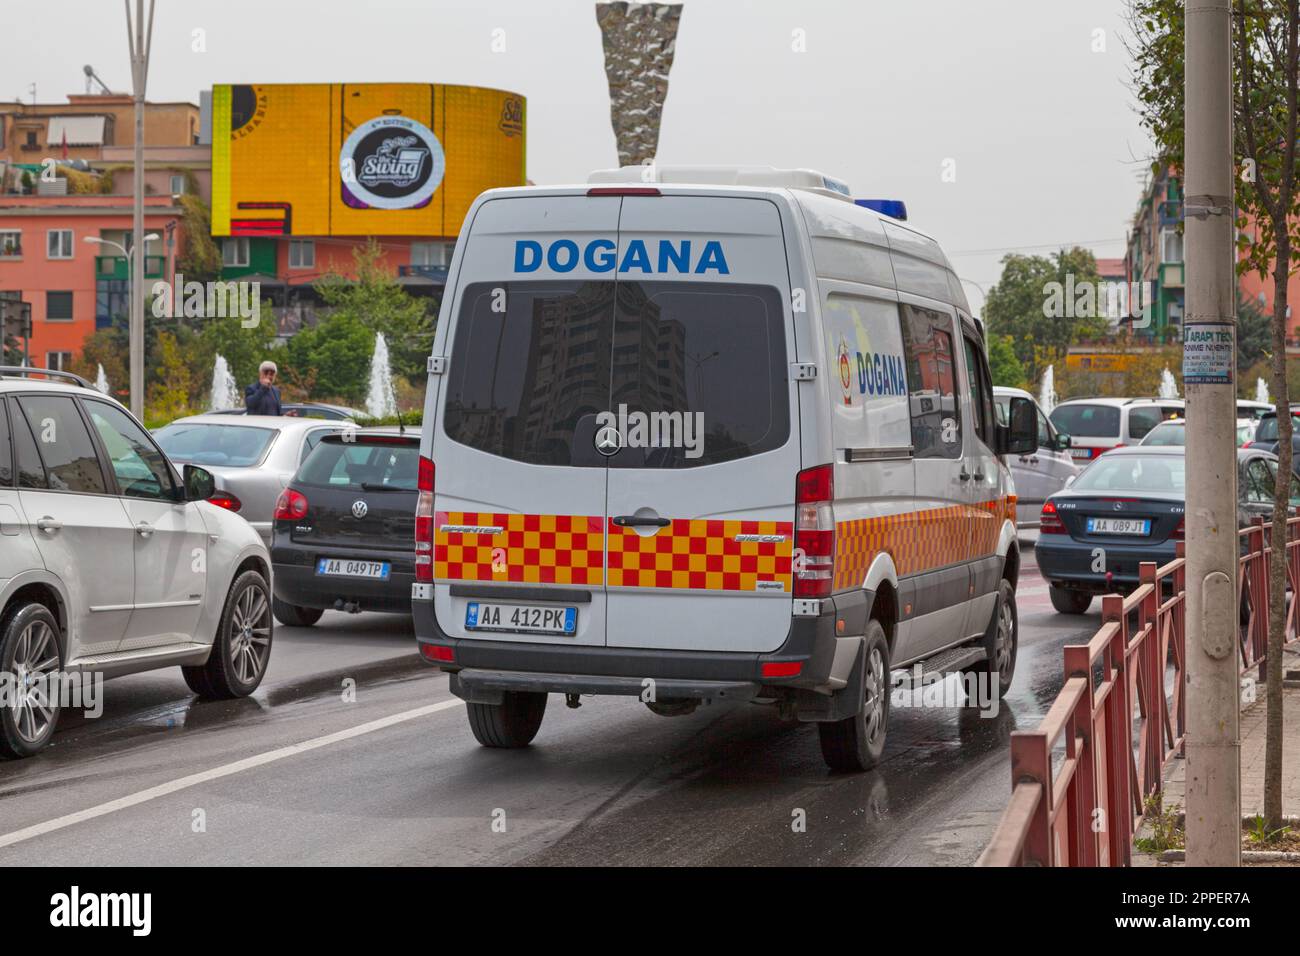 Tirana, Albanie - 22 avril 2019: Douane van (Dogana) sur une rue du centre ville. Banque D'Images